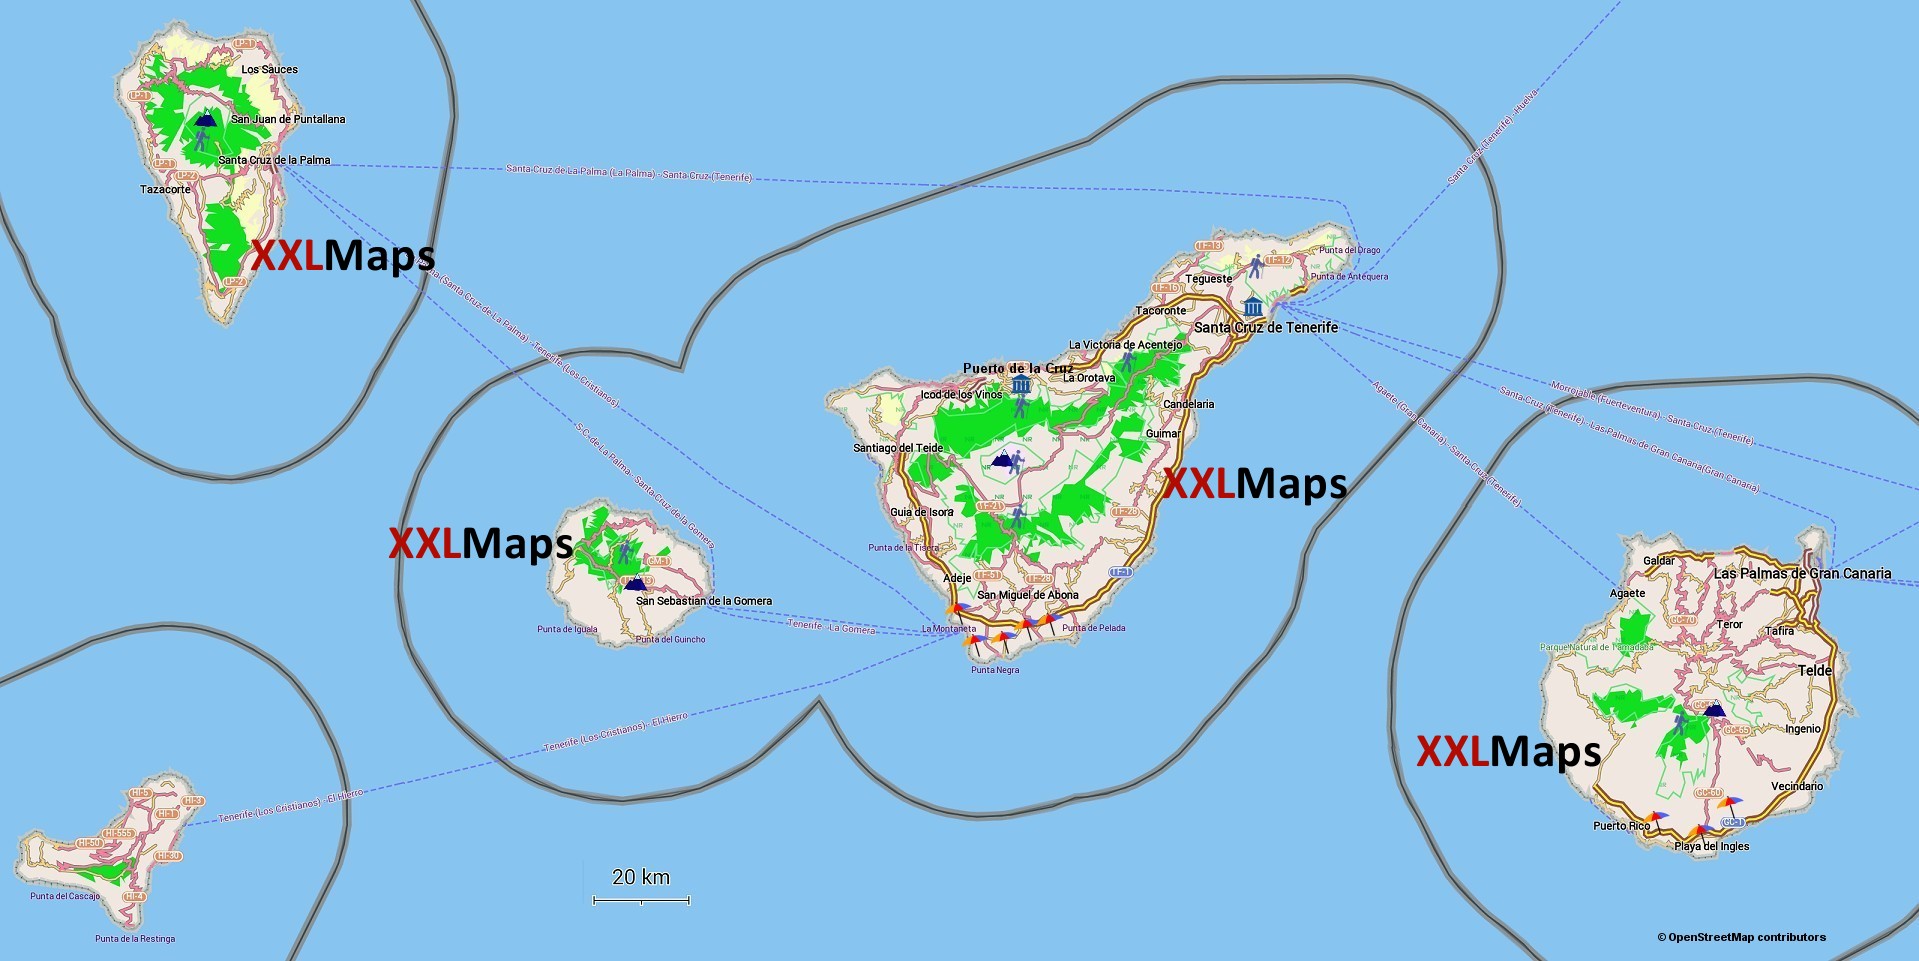 Mapa físico de Ilhas Canárias